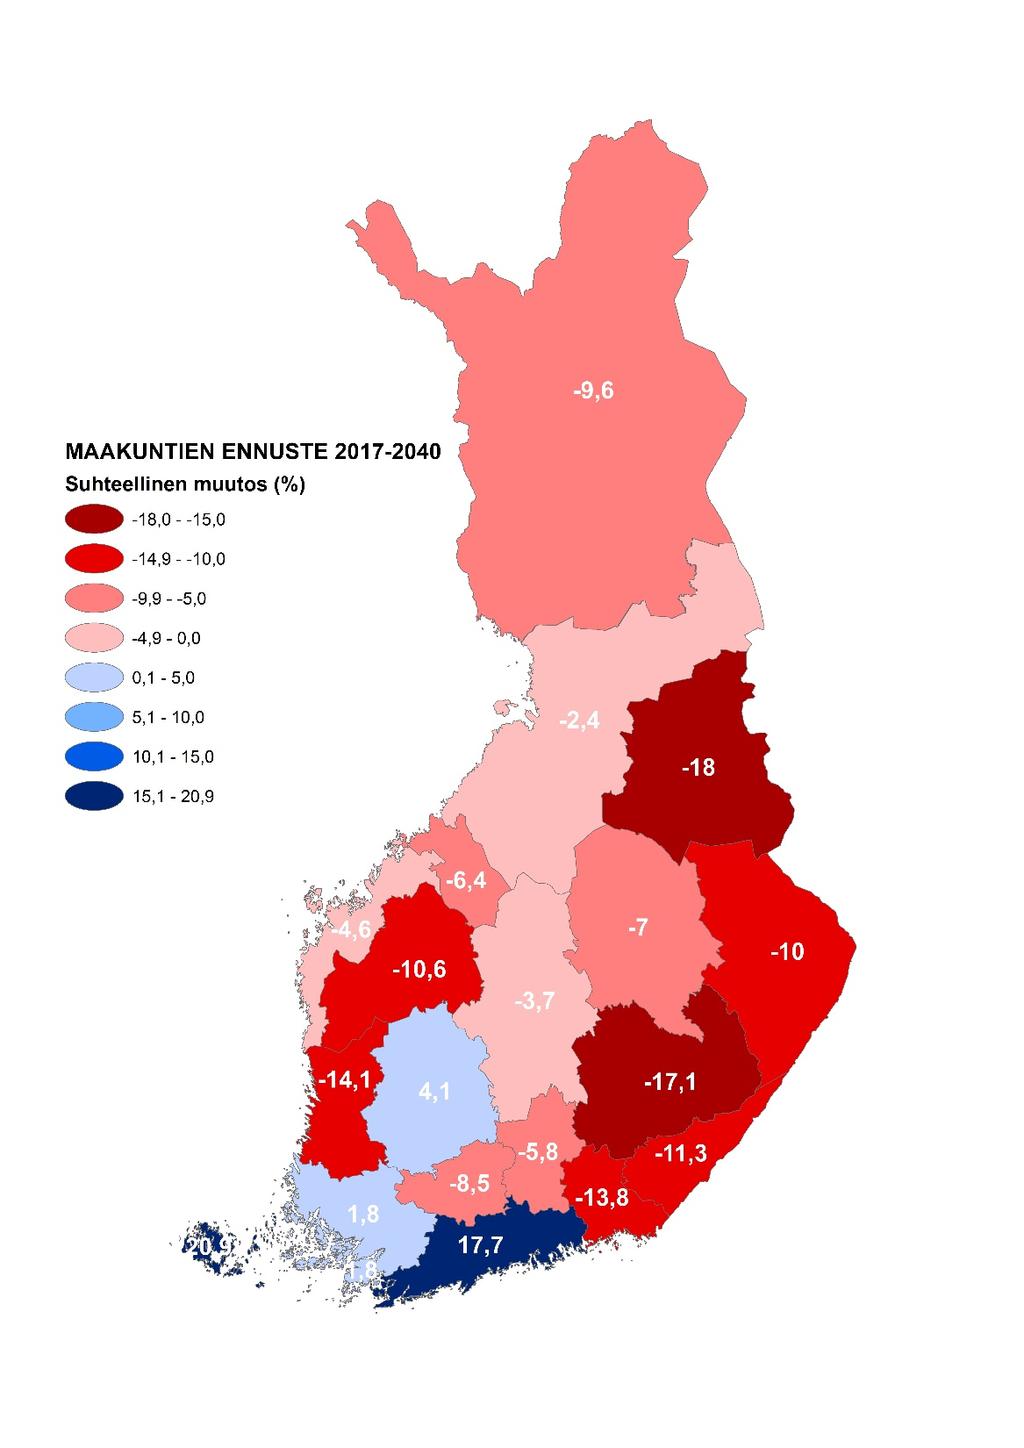 Maakuntien väestönkehitys 2017 2040 MDI:n ennusteen perusteella maakunnat voidaan jakaa kuuteen luokkaan: 1. Vahvan kasvun maakunnat: Uusimaa ja Ahvenanmaa.